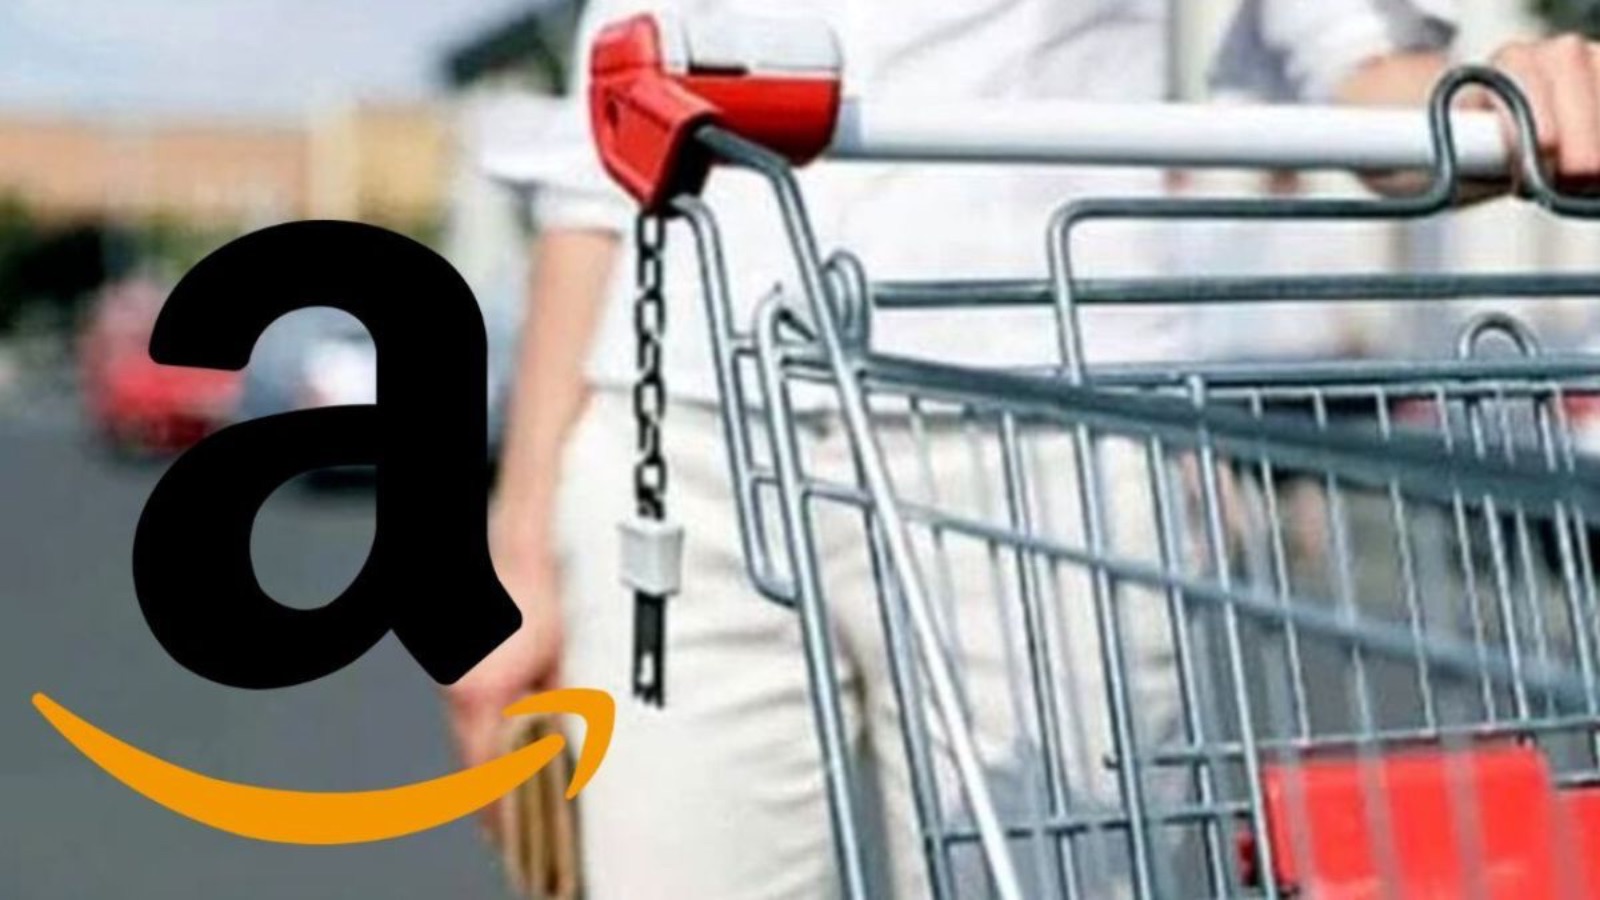 Amazon sconti, le offerte lampo di OGGI sono al 50% di sconto 